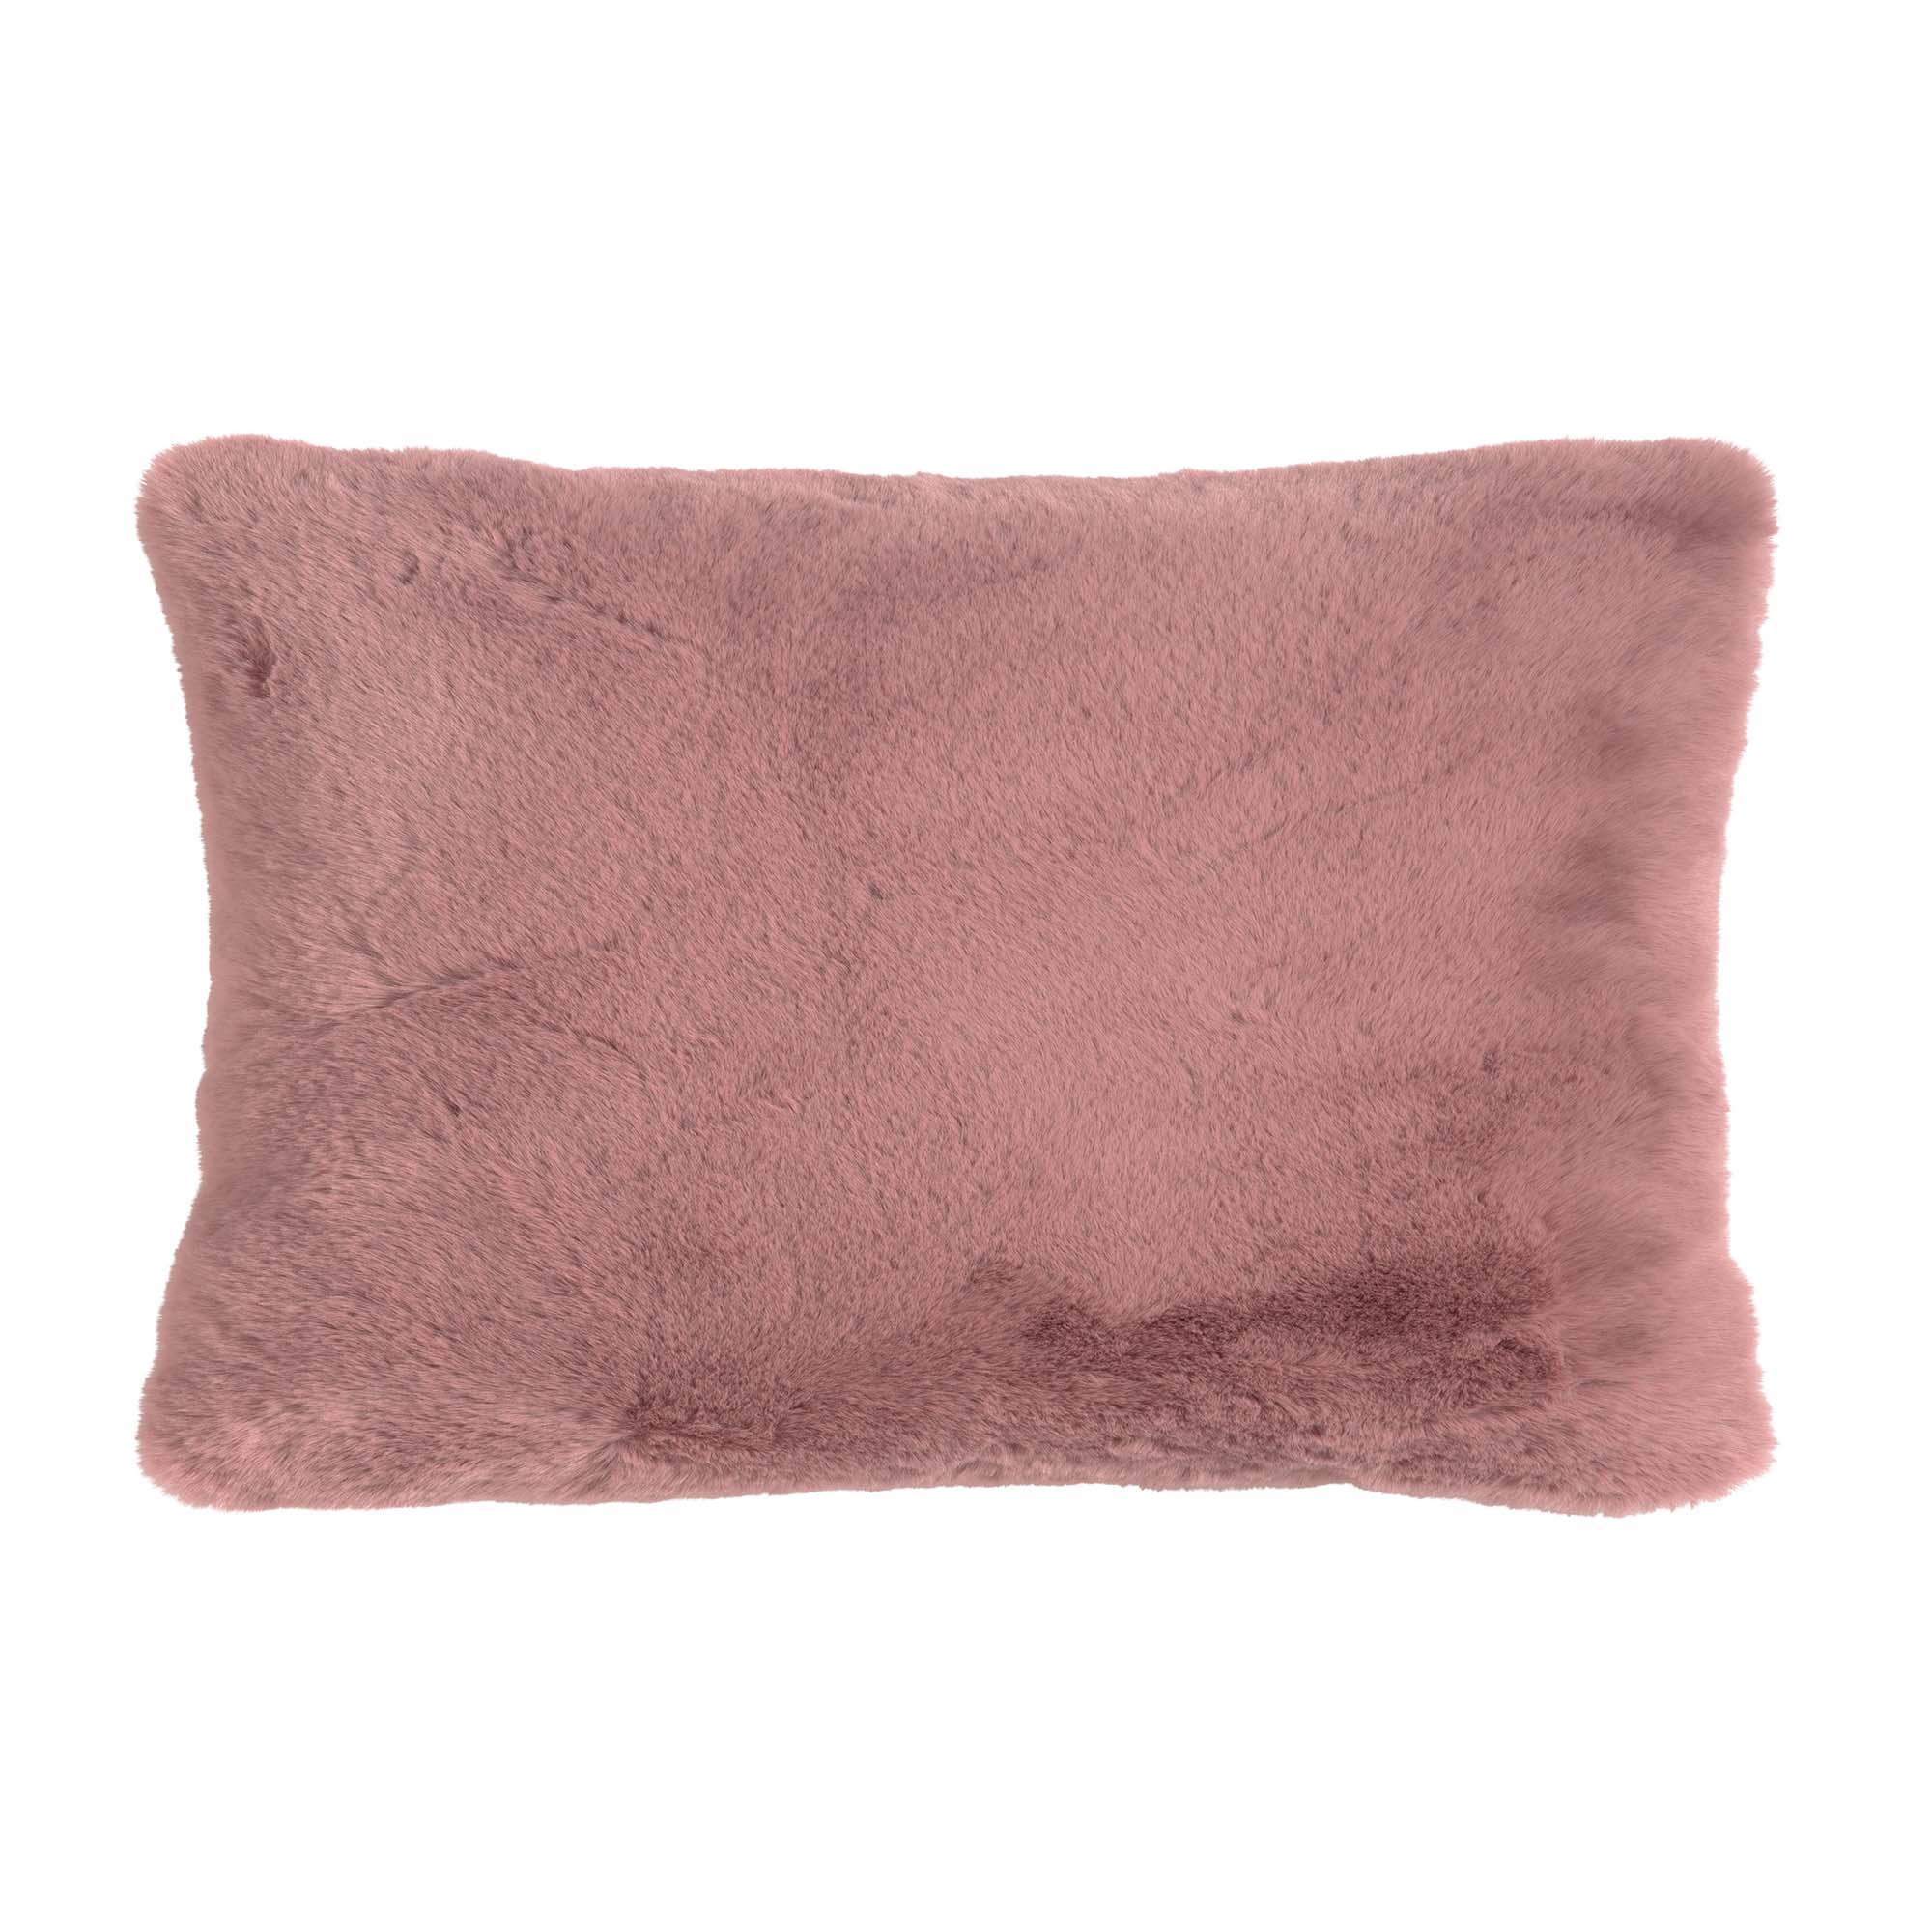 ZAYA - Sierkussen 30x50 cm - bontlook - effen kleur - Pale Mauve - roze